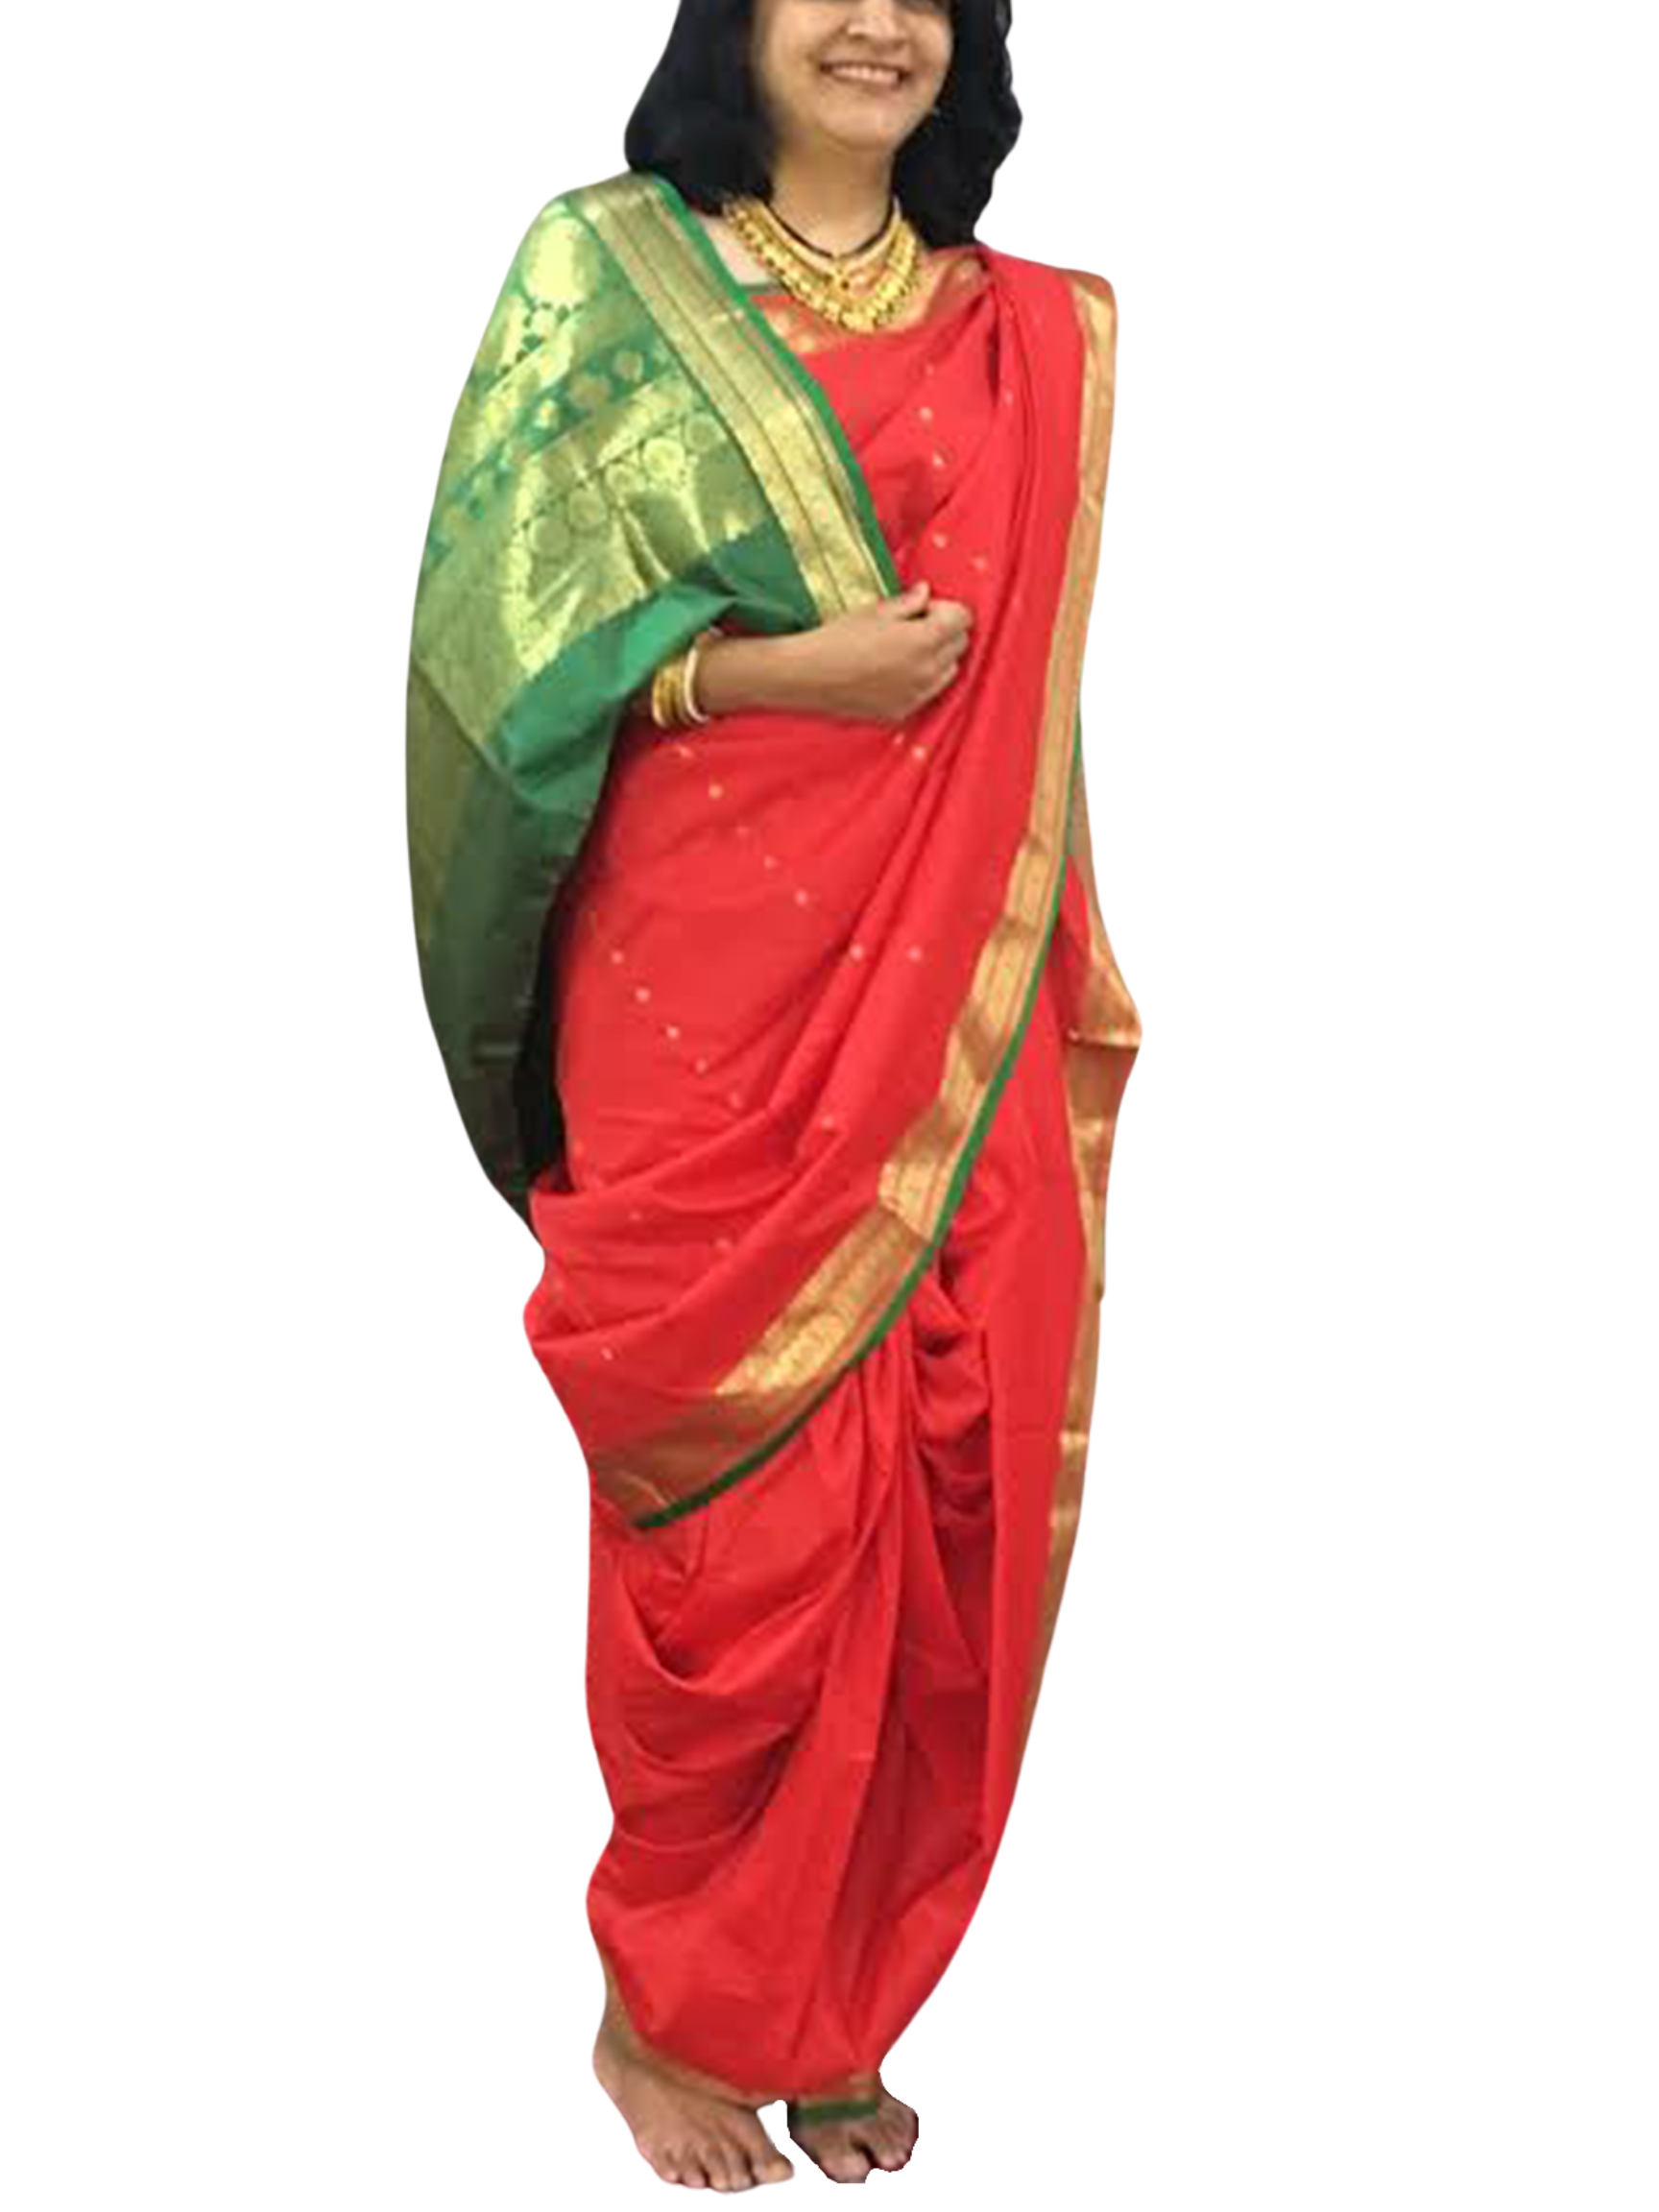 Ready to wear Nauvari in... - Readymade Nauvari saree. | Facebook